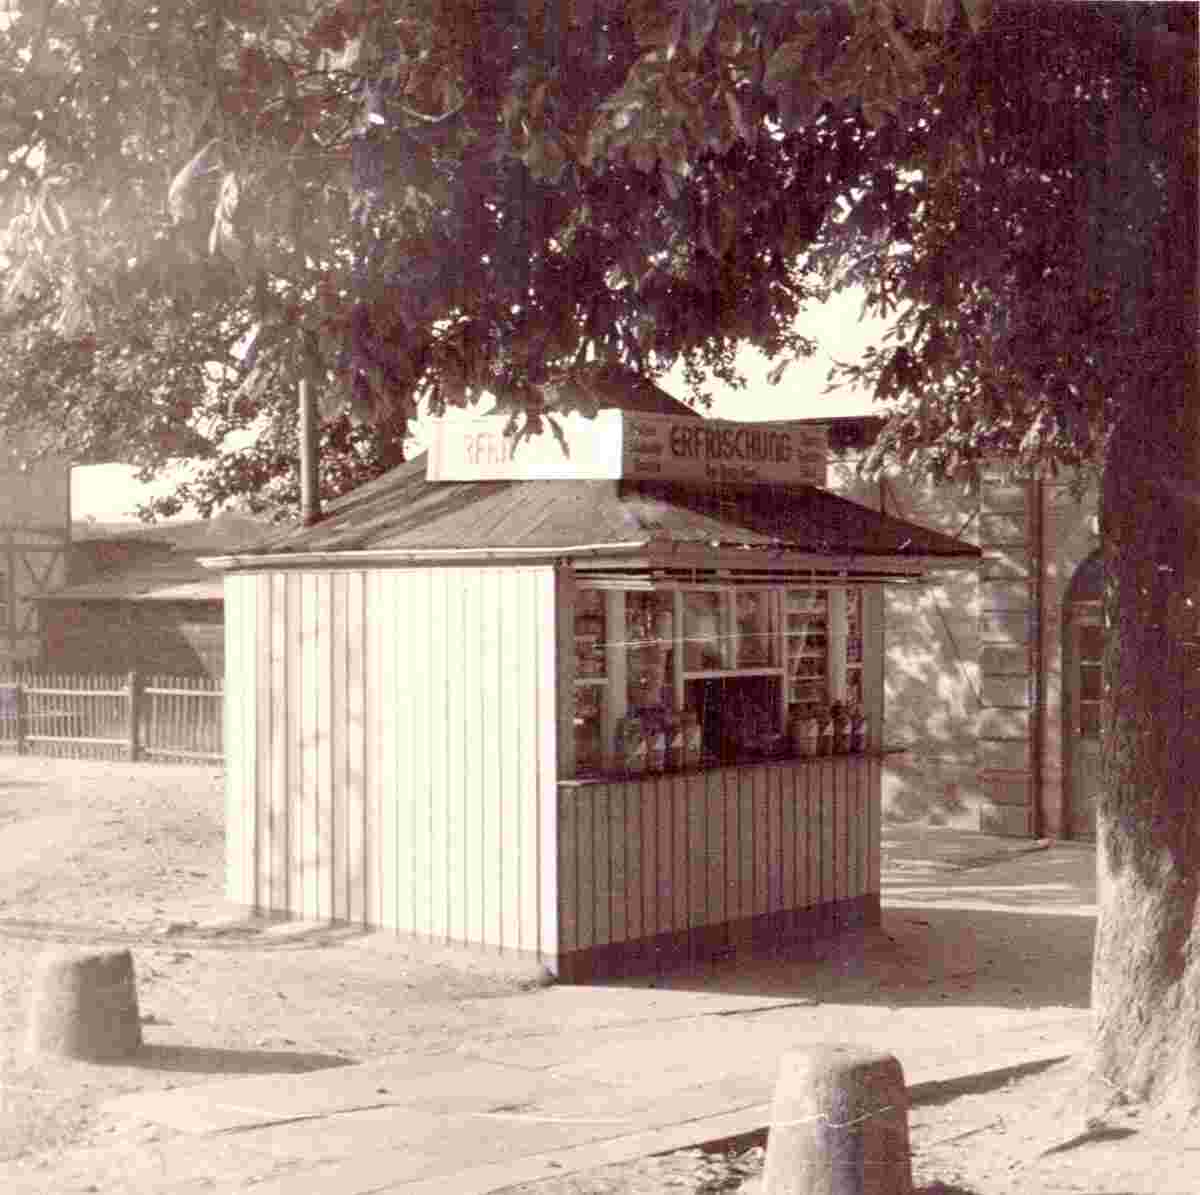 Hemsbach. Kiosk am Bahnhof von Auguste Döringer, 1935